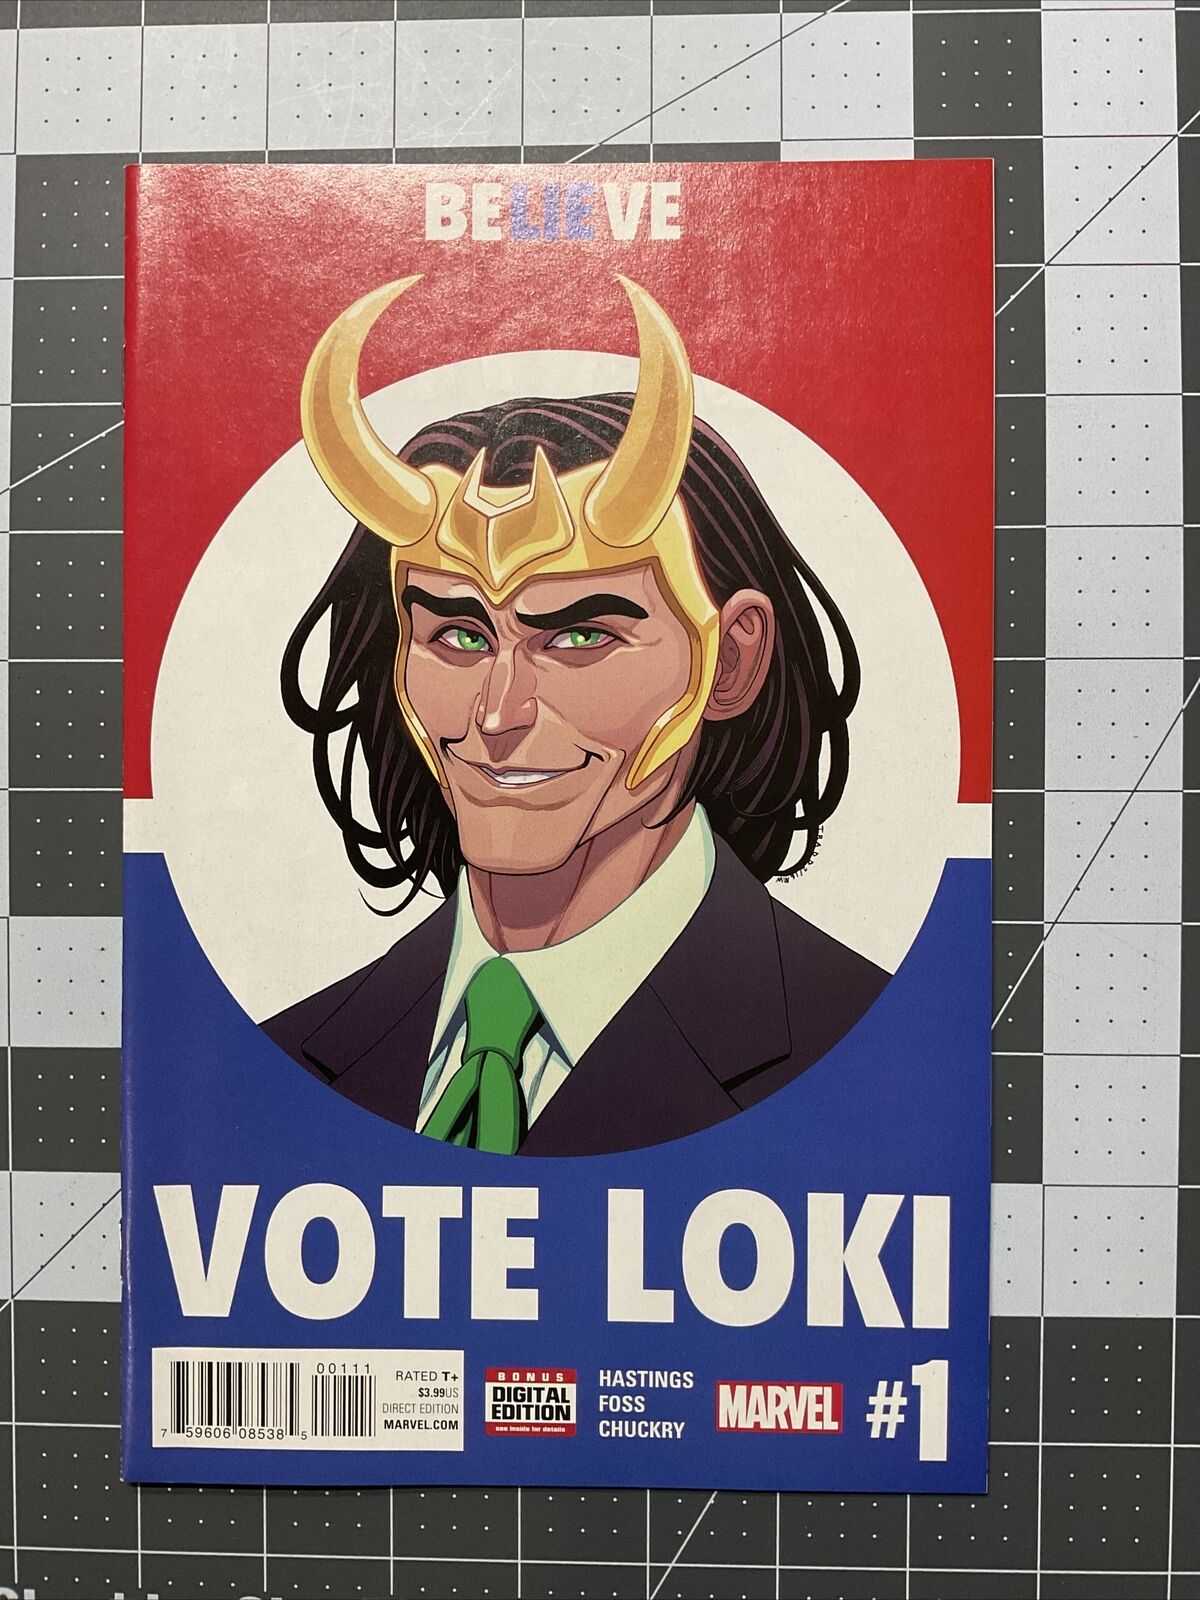 Vote Loki #1 - 2016 - Marvel - President Loki - VF/NM